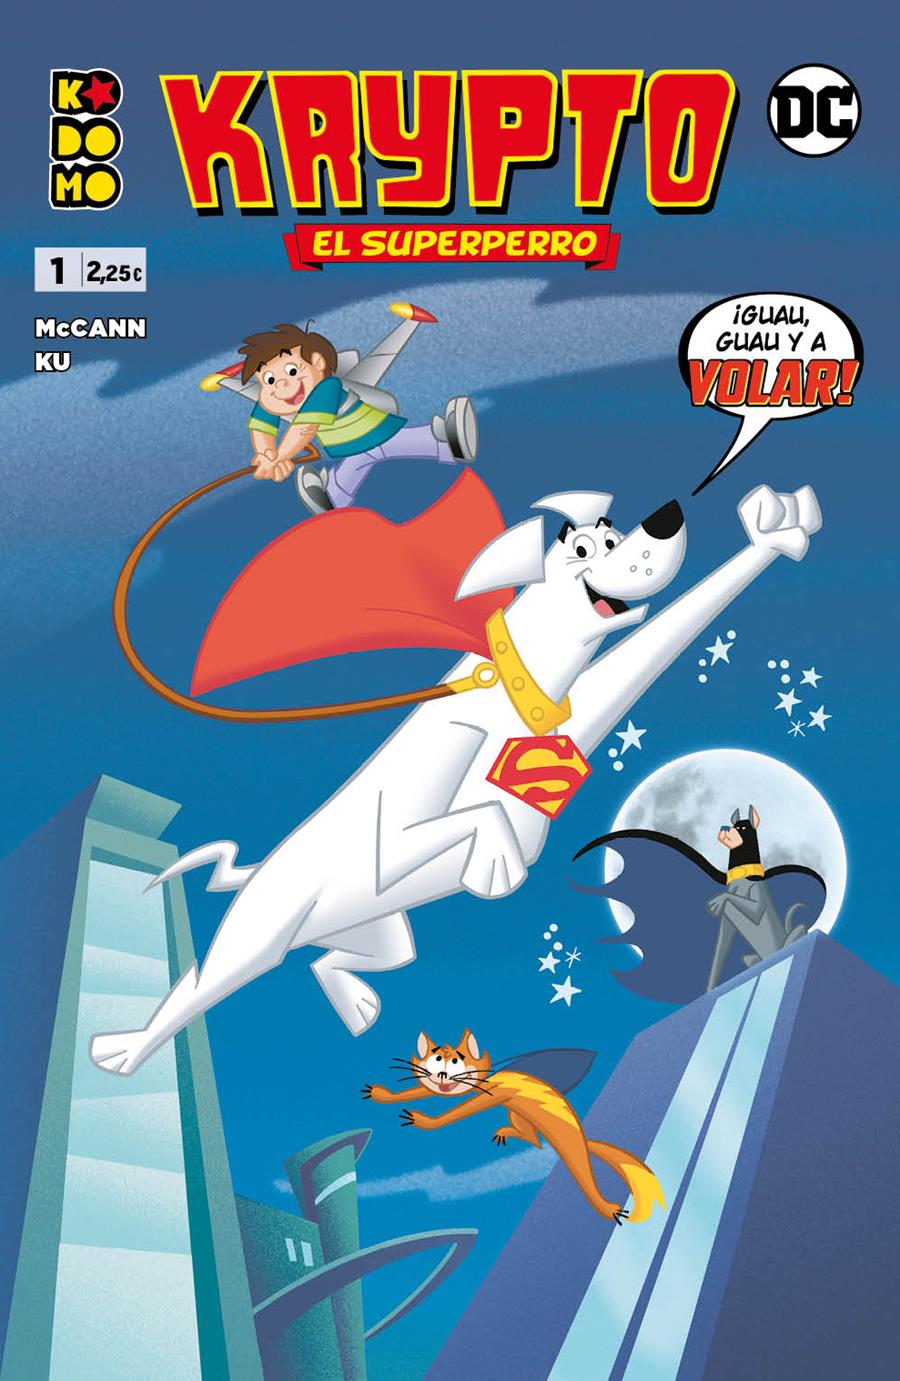 Krytpo el superperro núm. 1 de 6 | N0221-ECC48 | Jesse Leon McCan / Min S. Ku | Terra de Còmic - Tu tienda de cómics online especializada en cómics, manga y merchandising